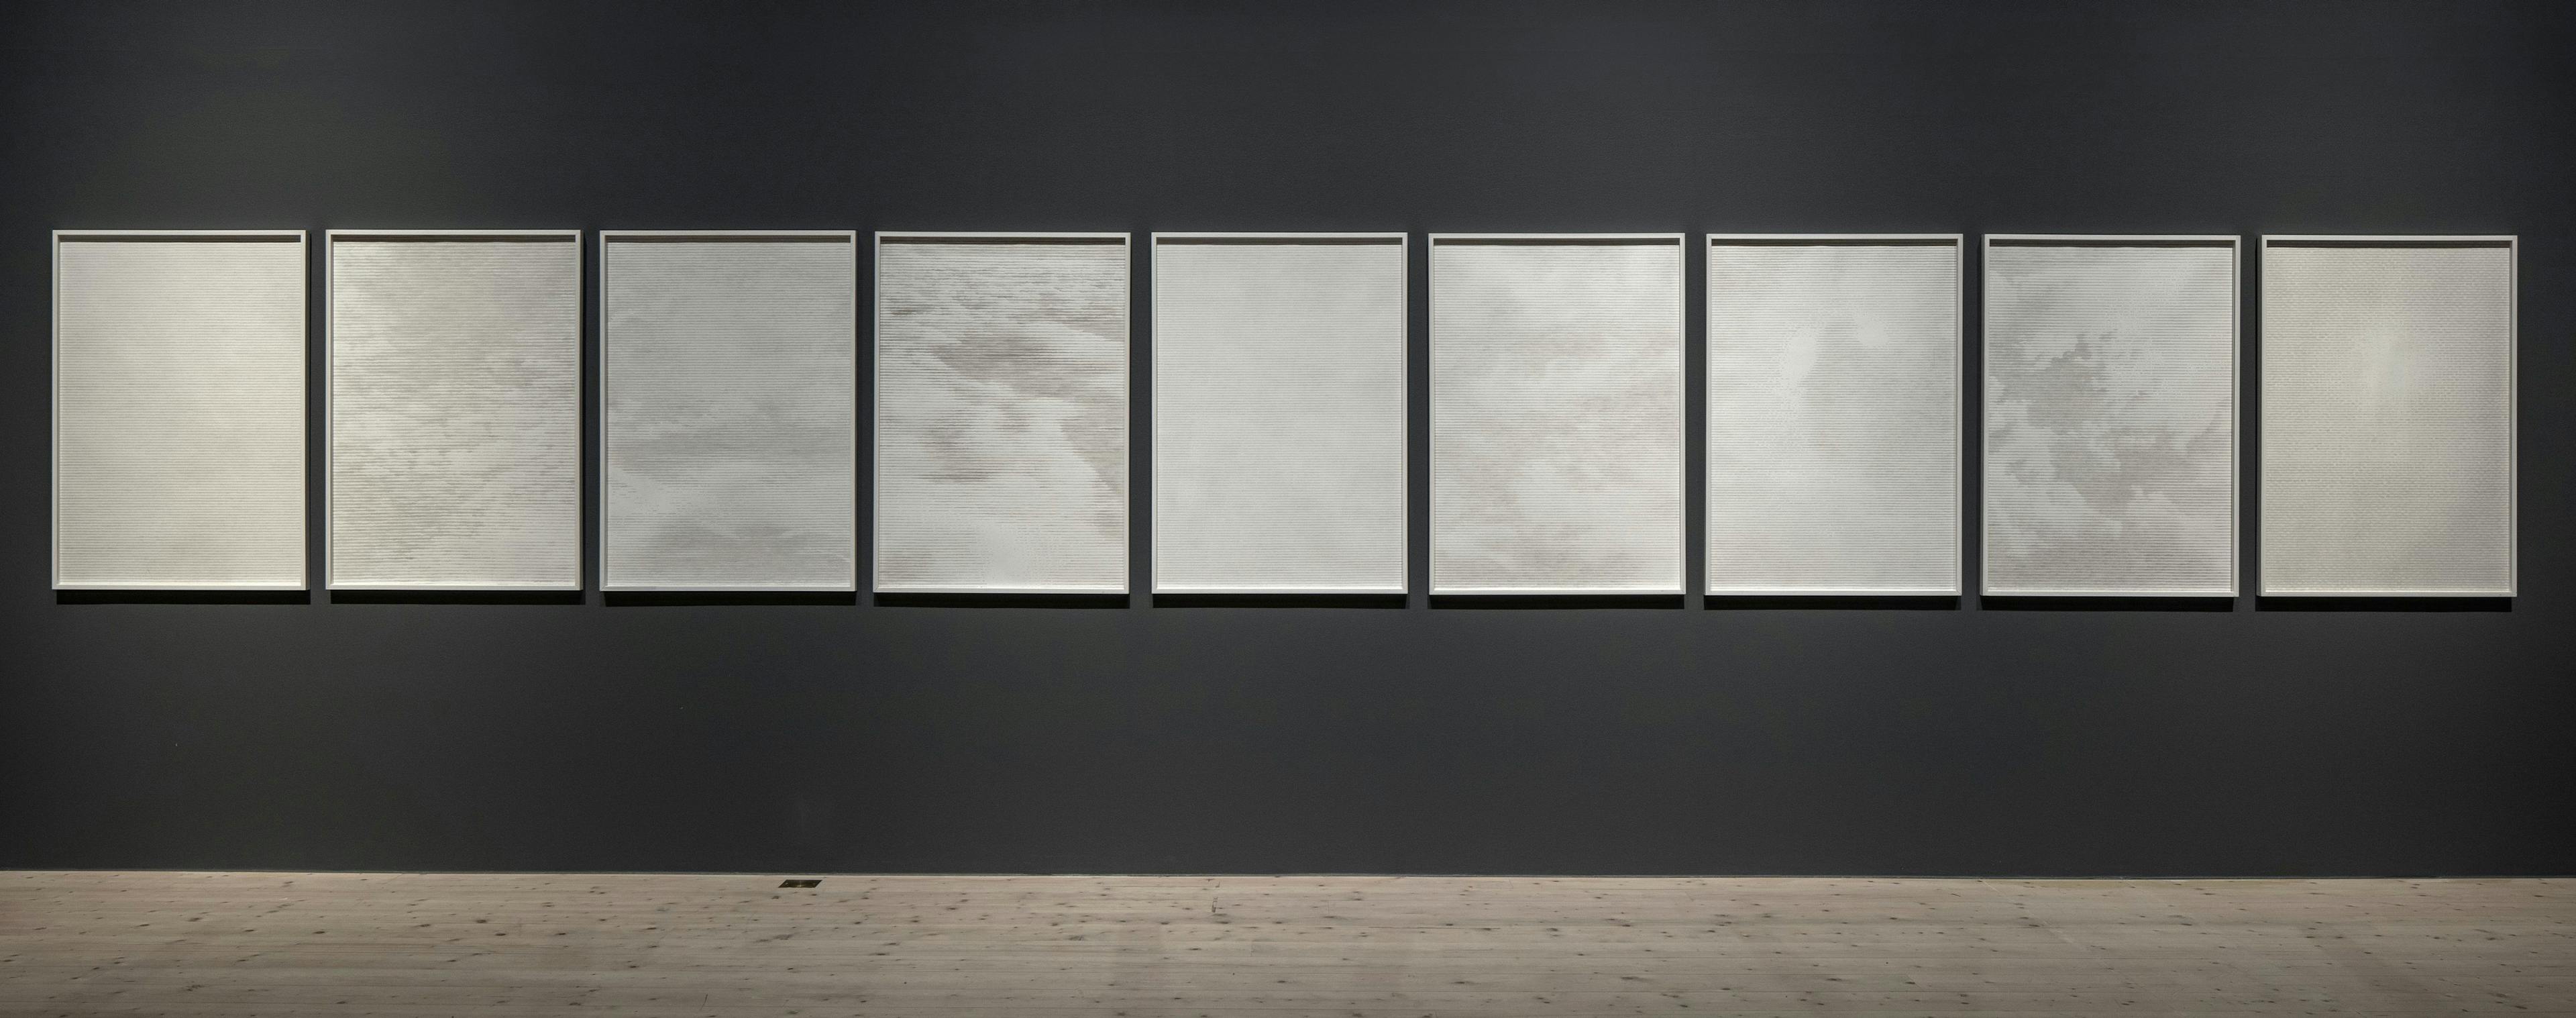 Åtta verk ur serien Oceaner av luft (av Anna Ling 2010) hänger på en mörkgrå vägg